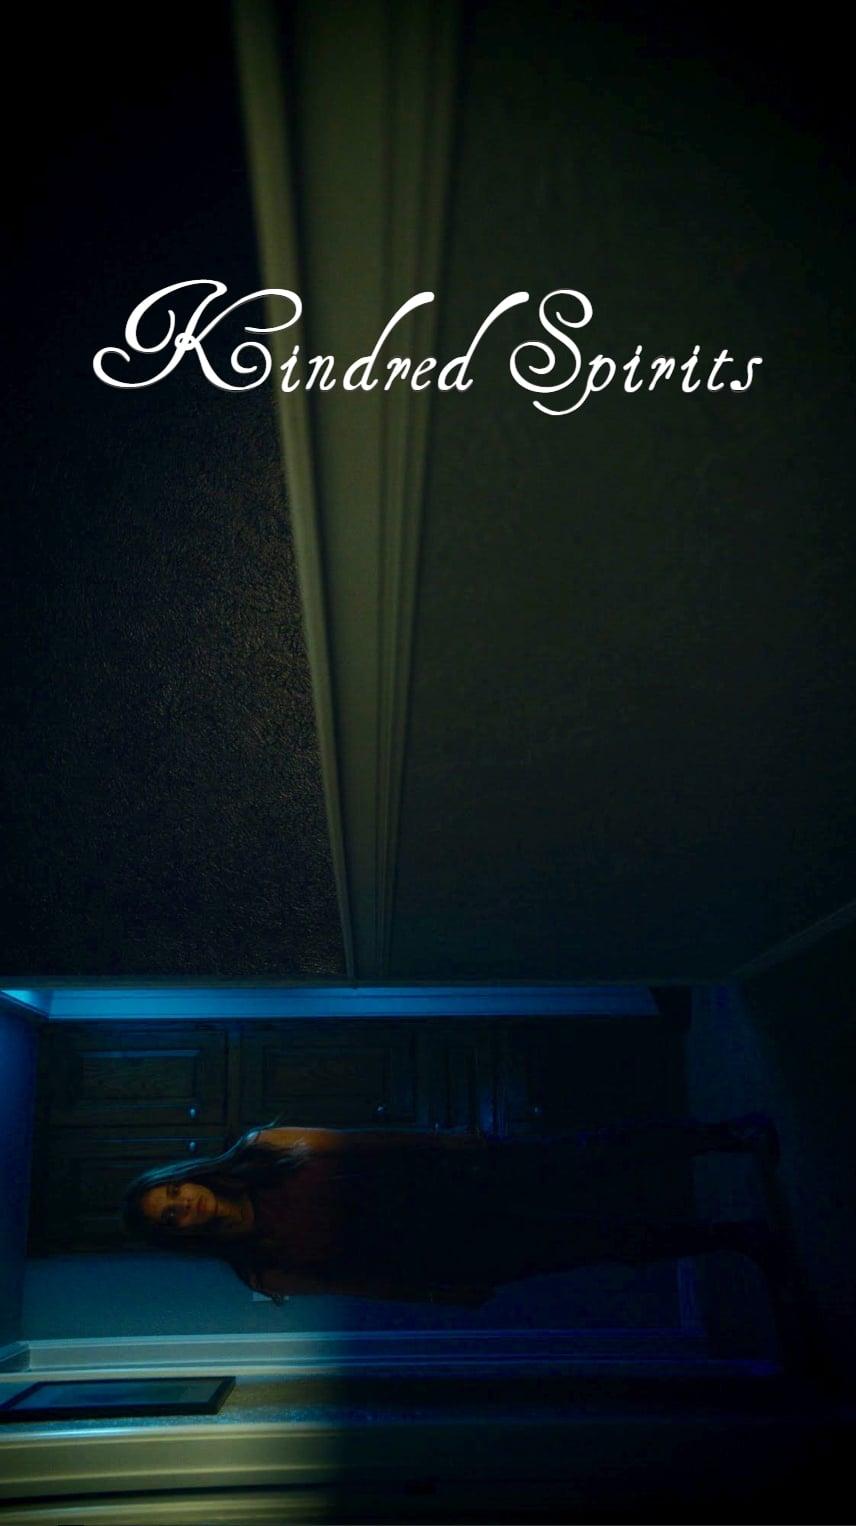 Kindred Spirits poster